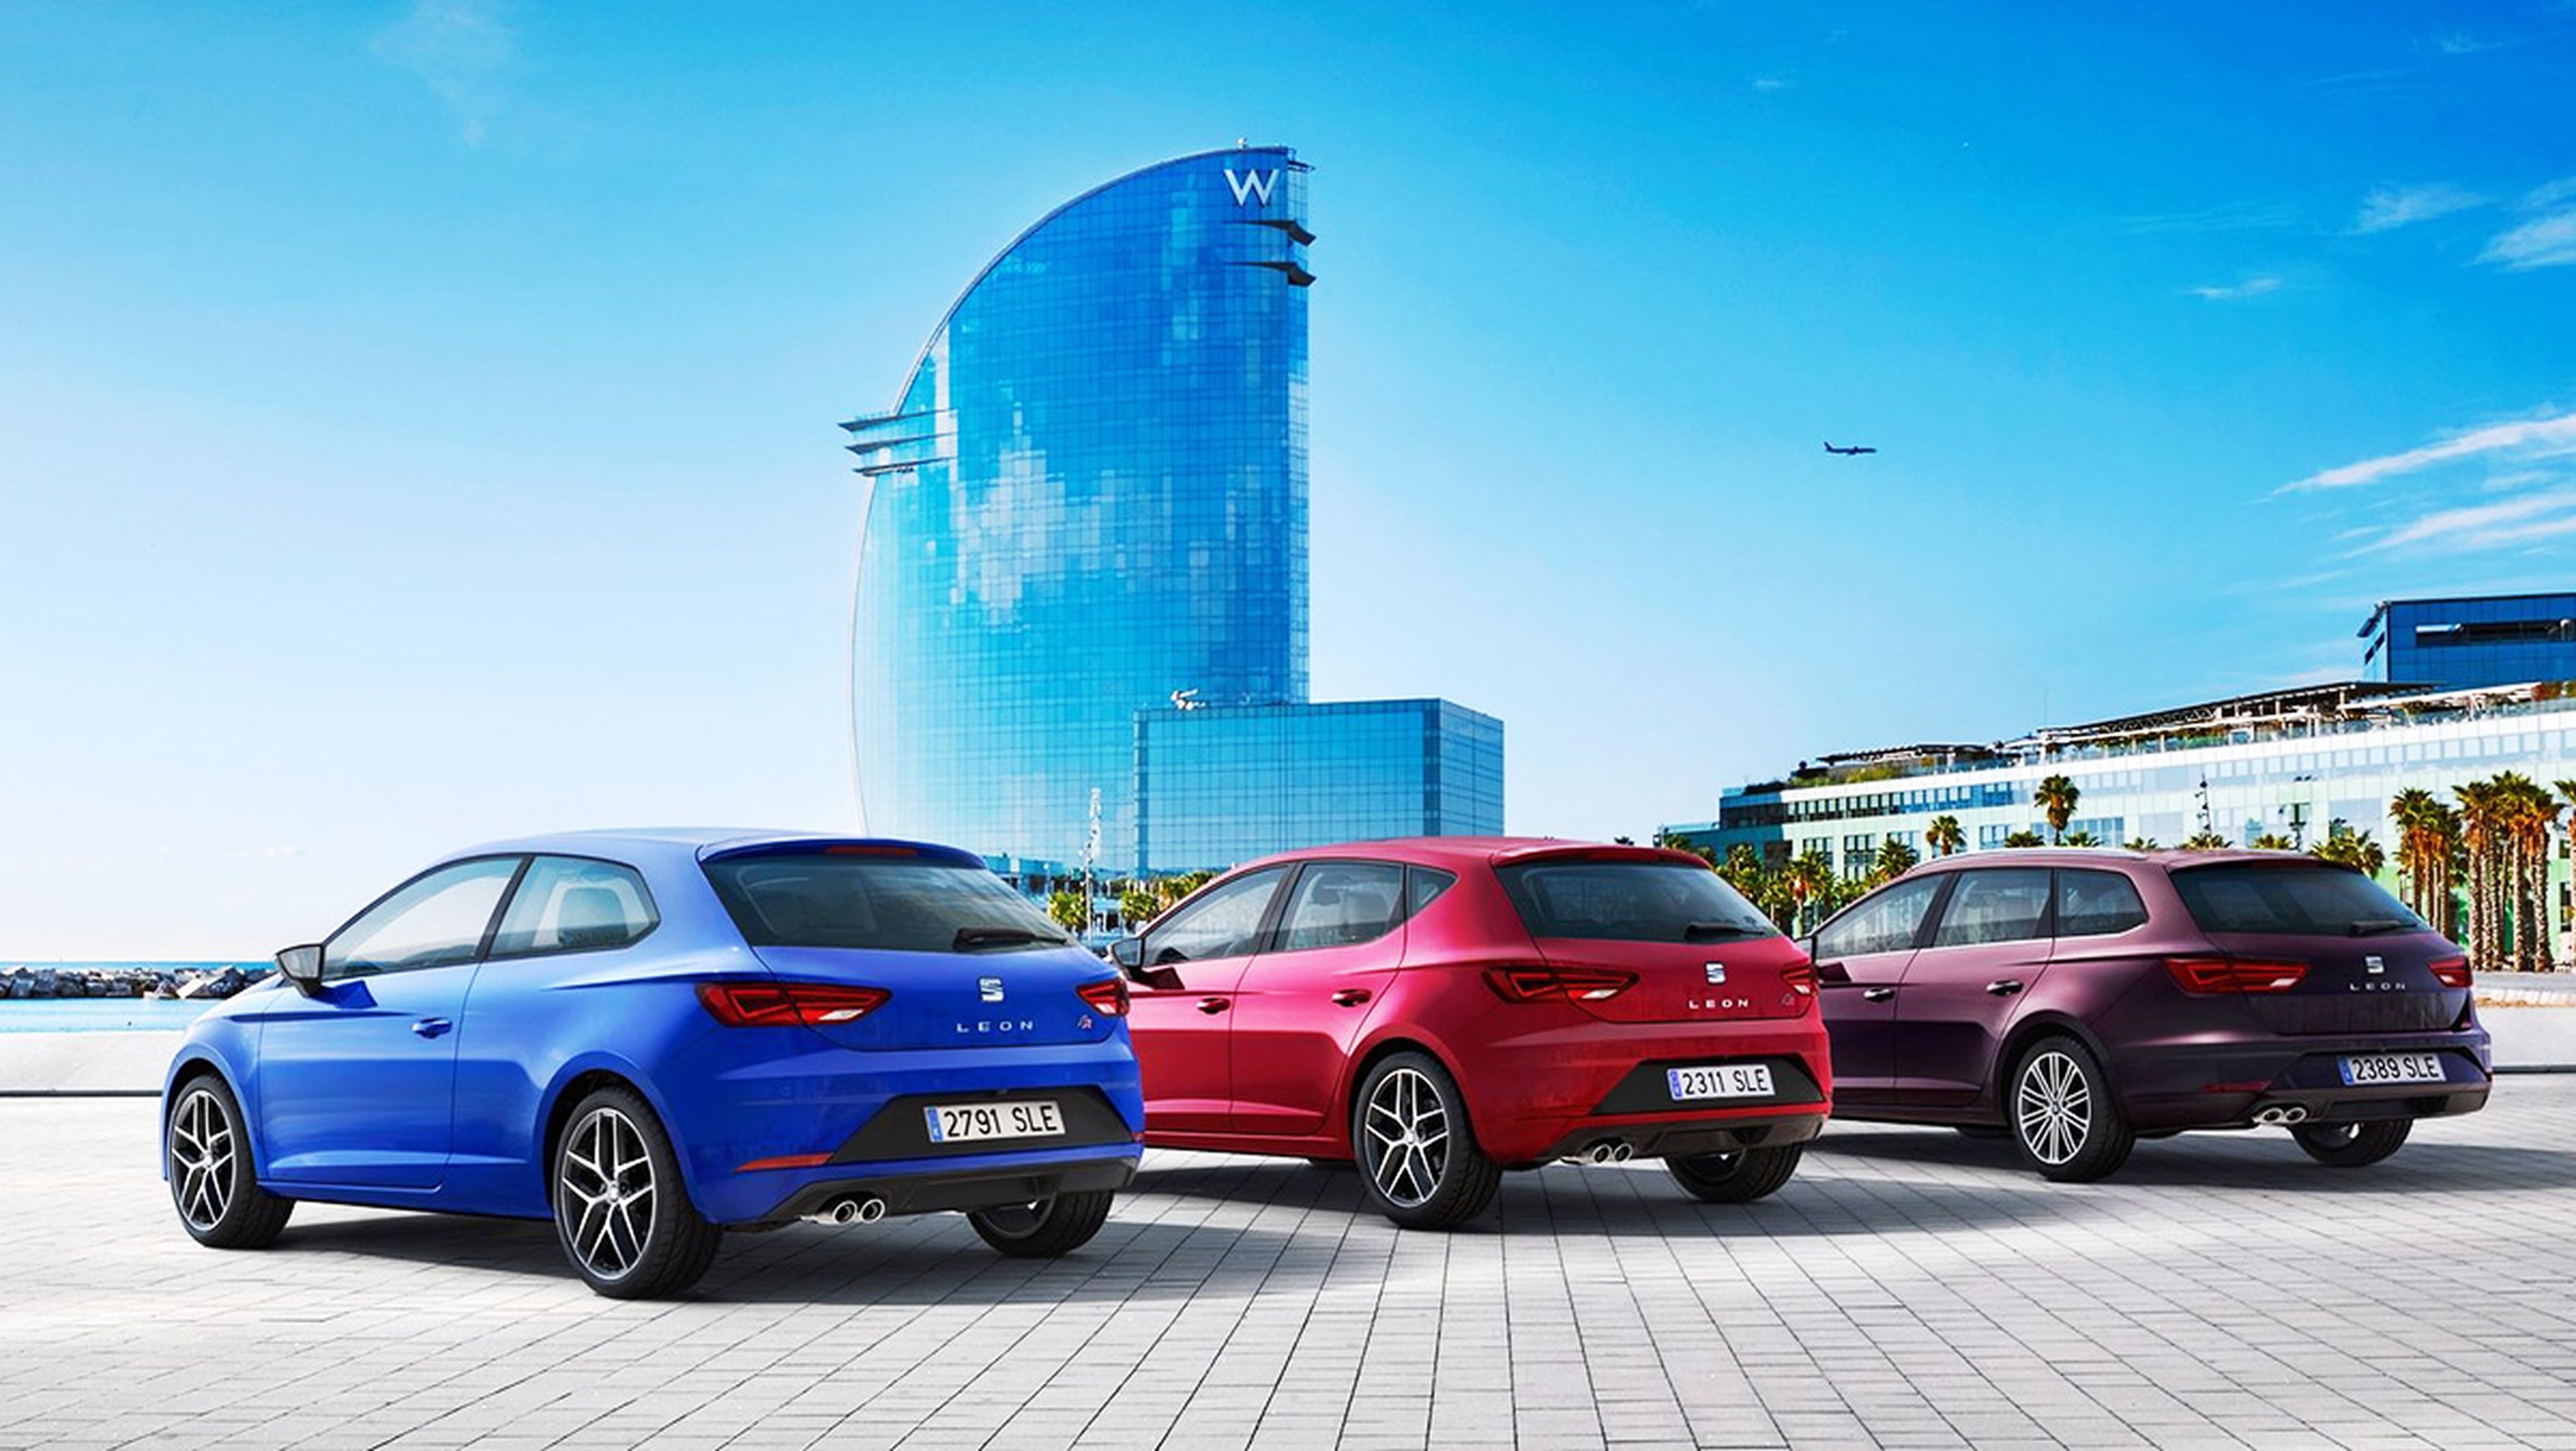 Seat León o Volkswagen Golf: ¿cuál deberías comprar?